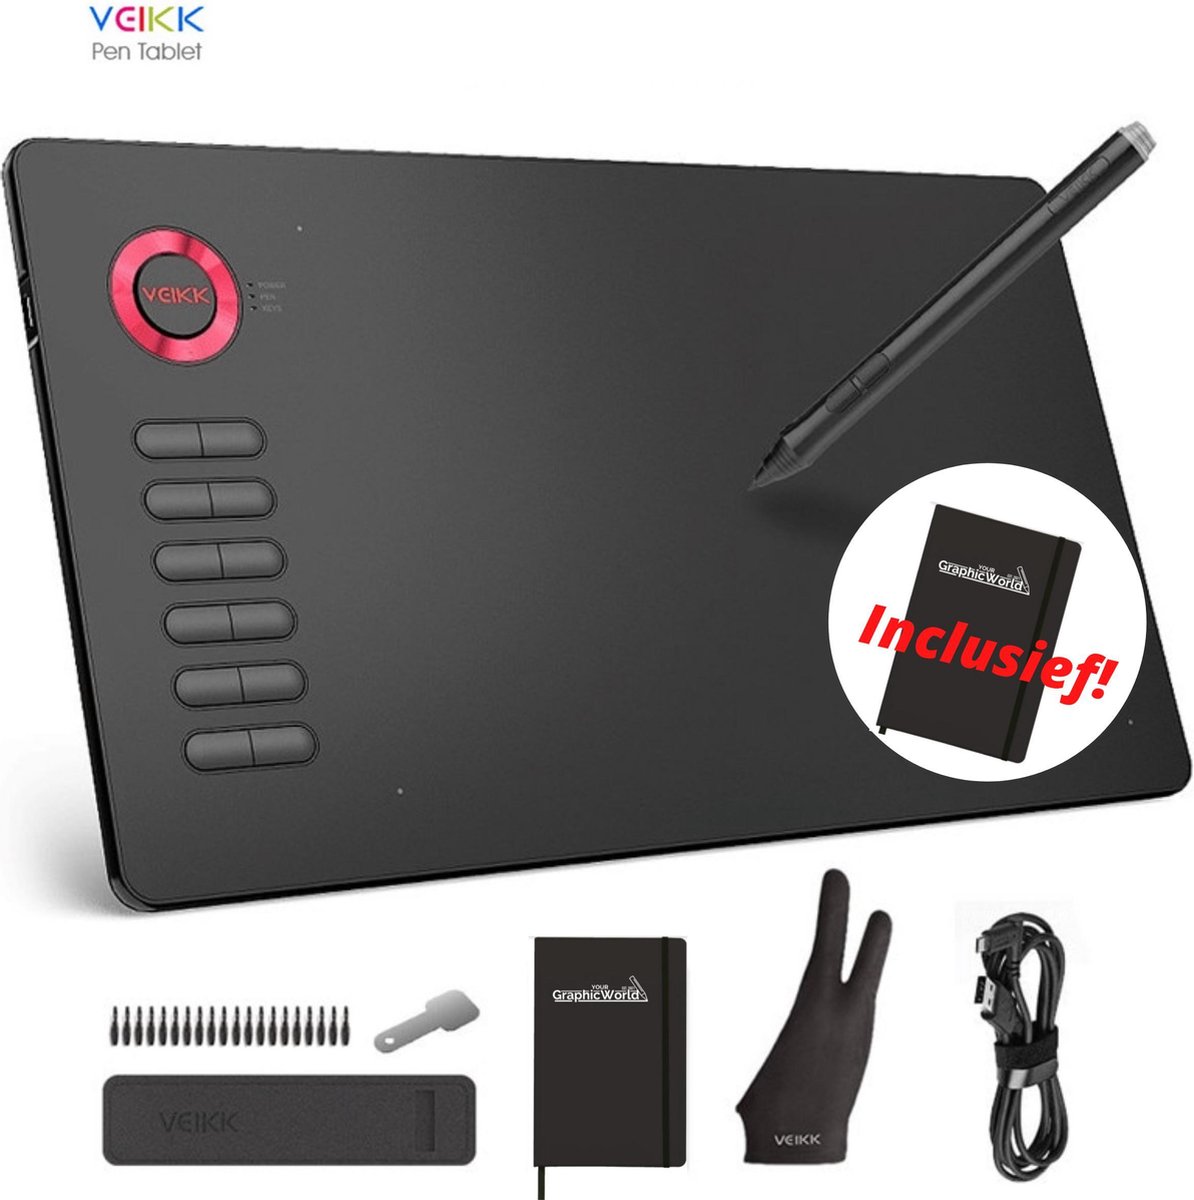 Tekentablet Veikk A15 inclusief beschermhoes - 10x6 inch - 5080 Lpi - grafische XL teken tablet - Batterij vrije pen - 12 sneltoetsen - Gratis tekenhandschoen